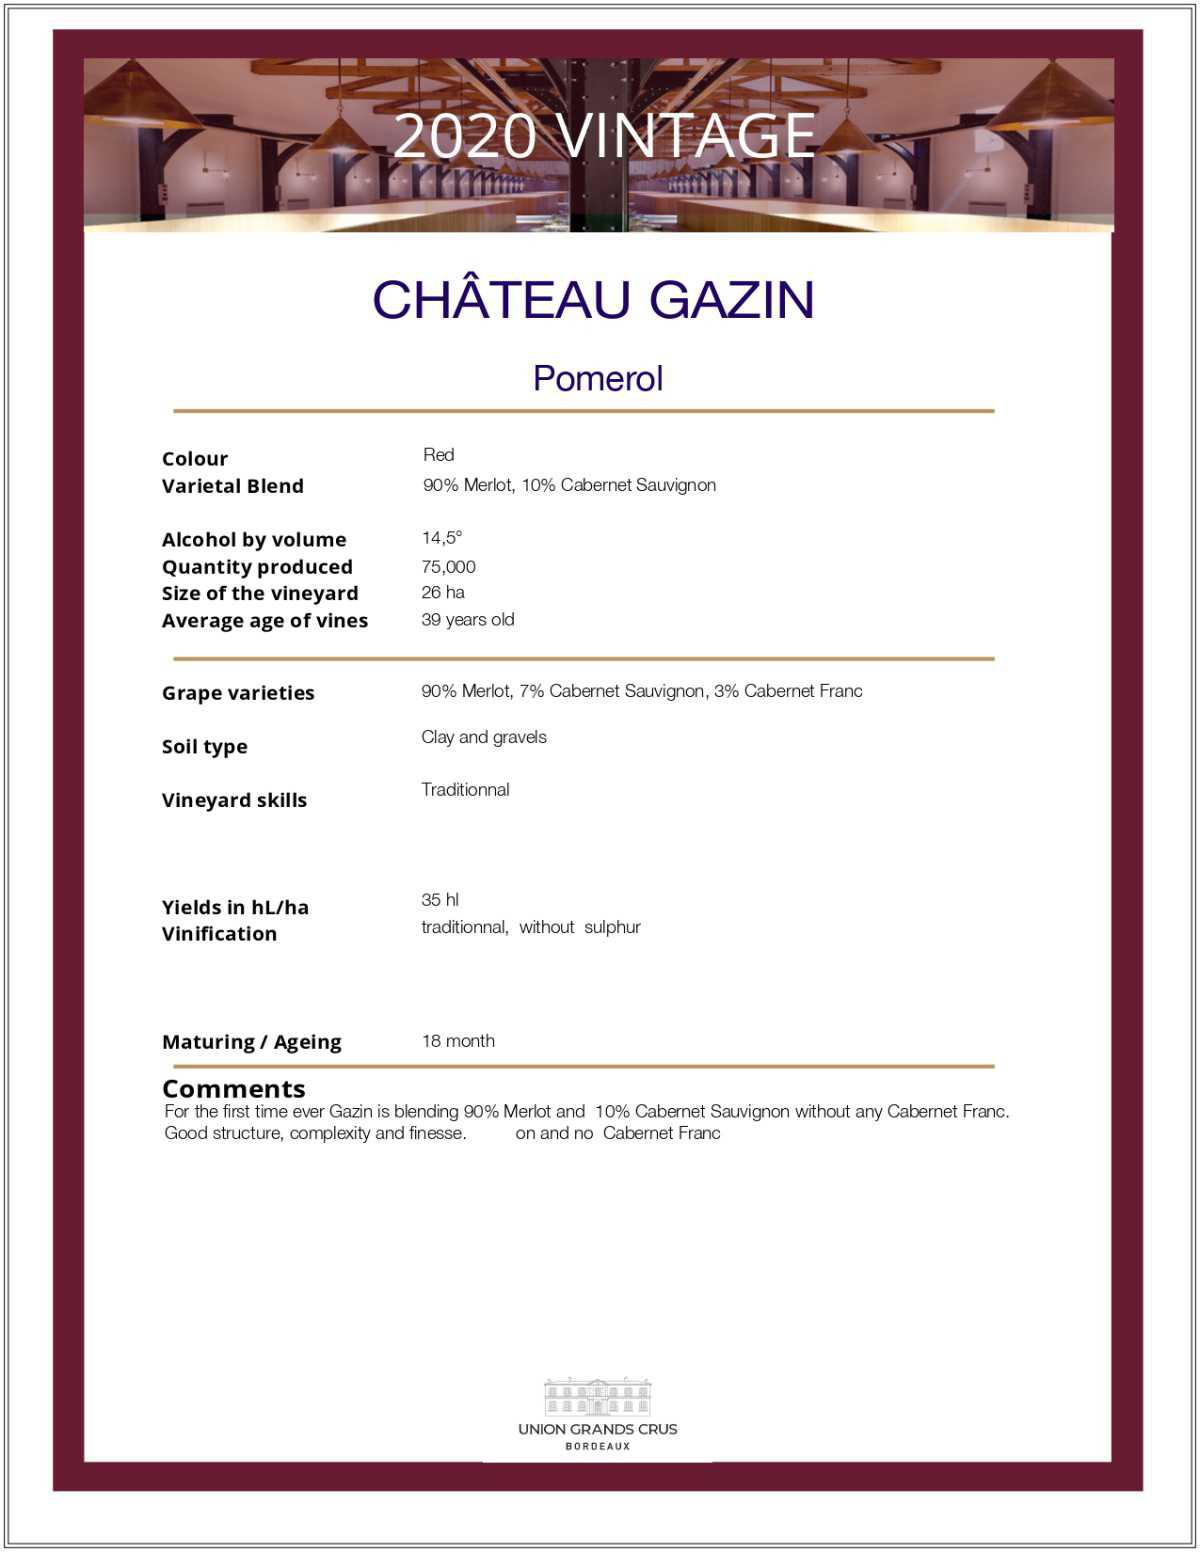 Château Gazin